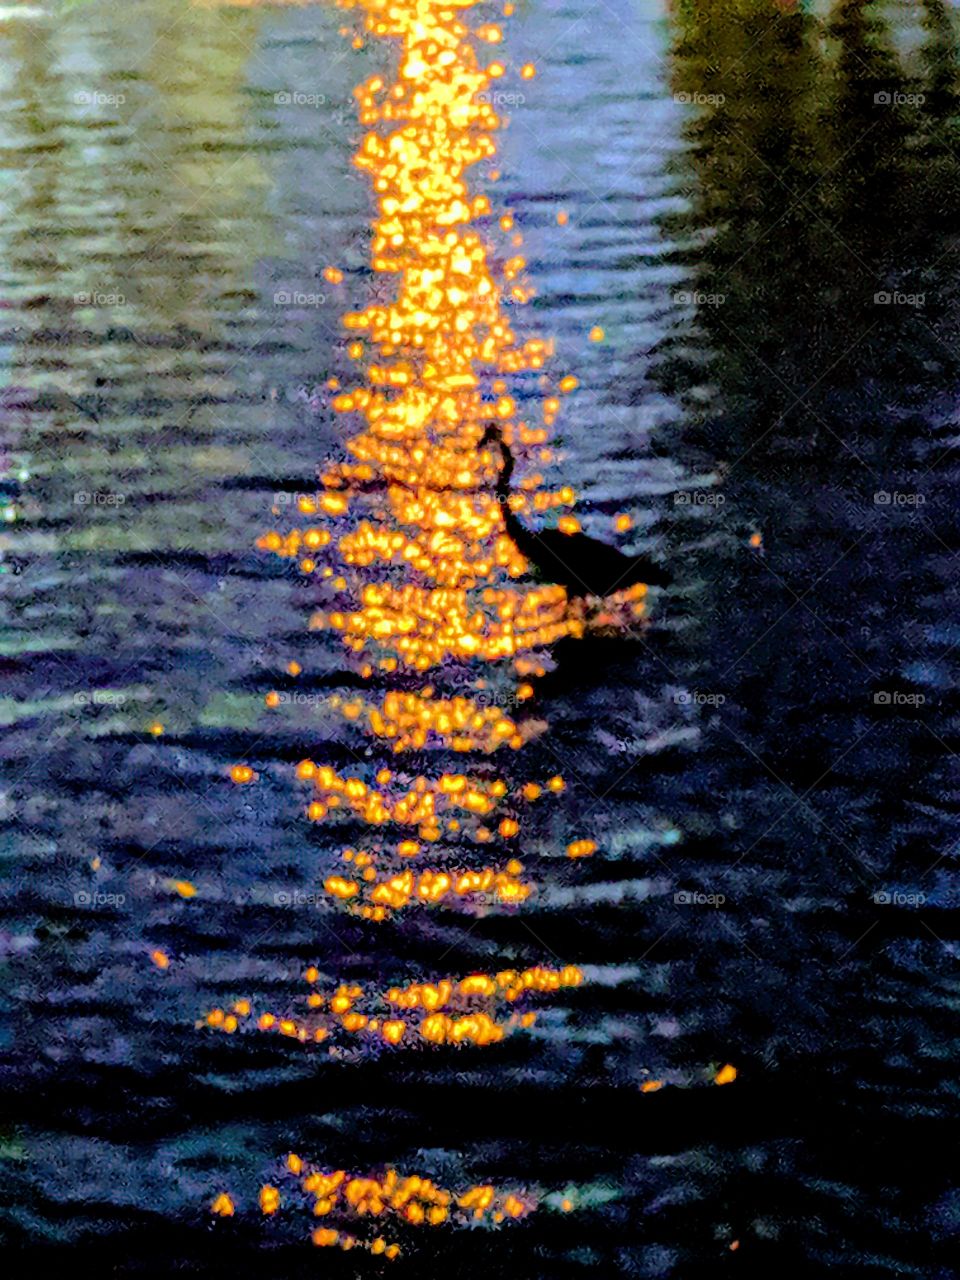 Nightfall Bird in the Water